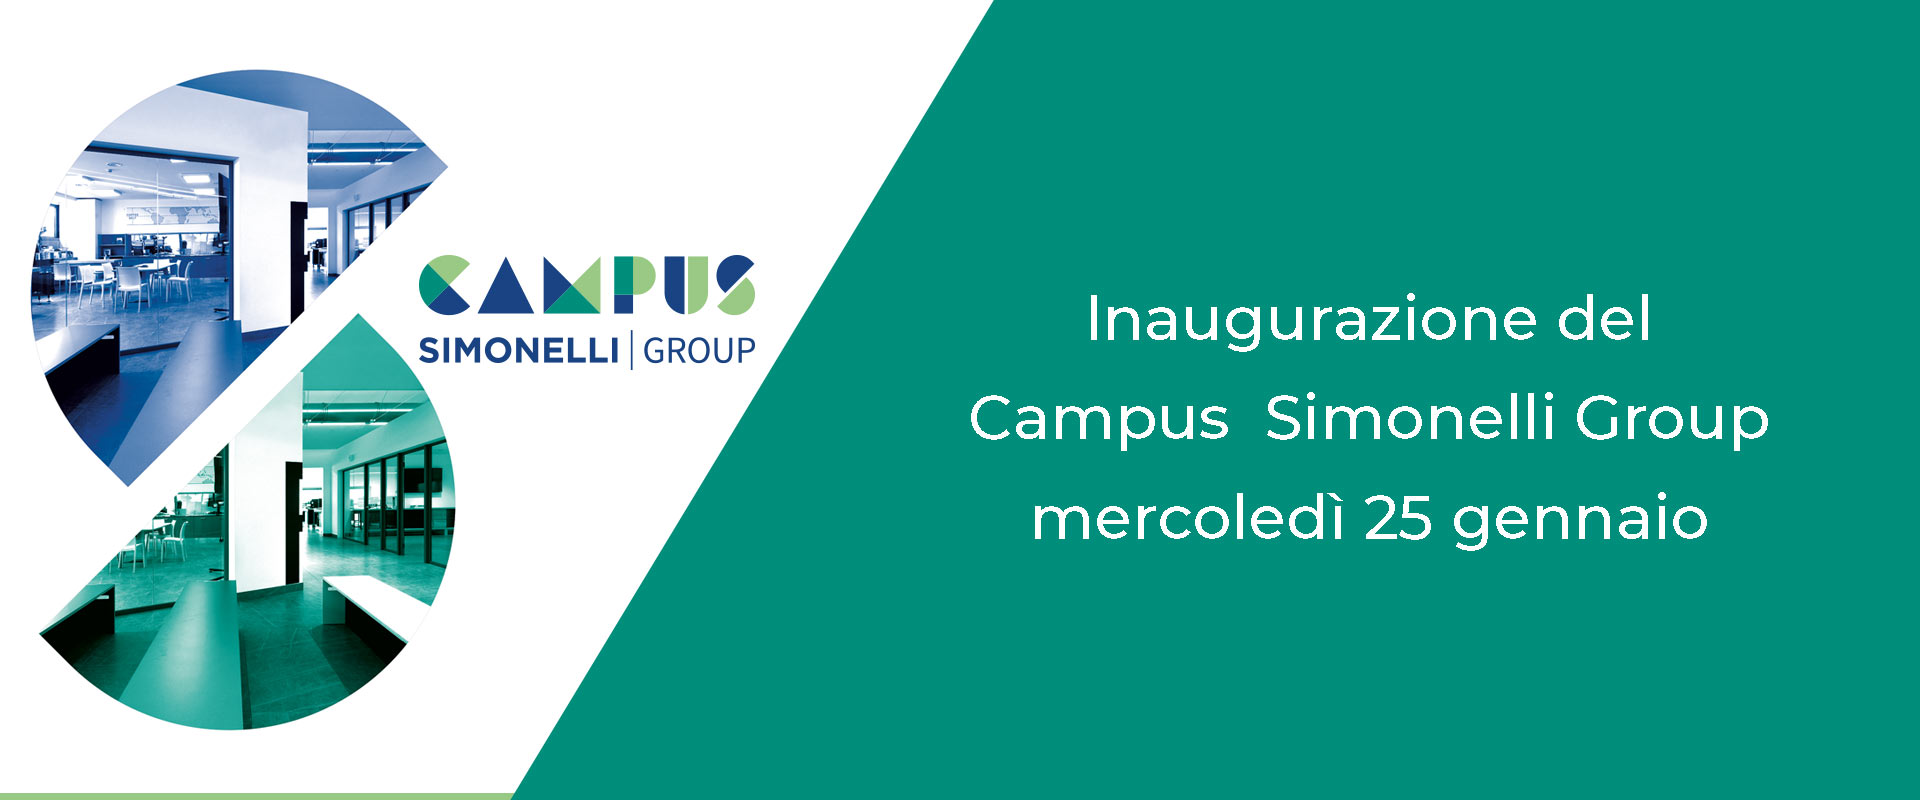 Inaugurazione del Campus Simonelli Group mercoledì 25 gennaio